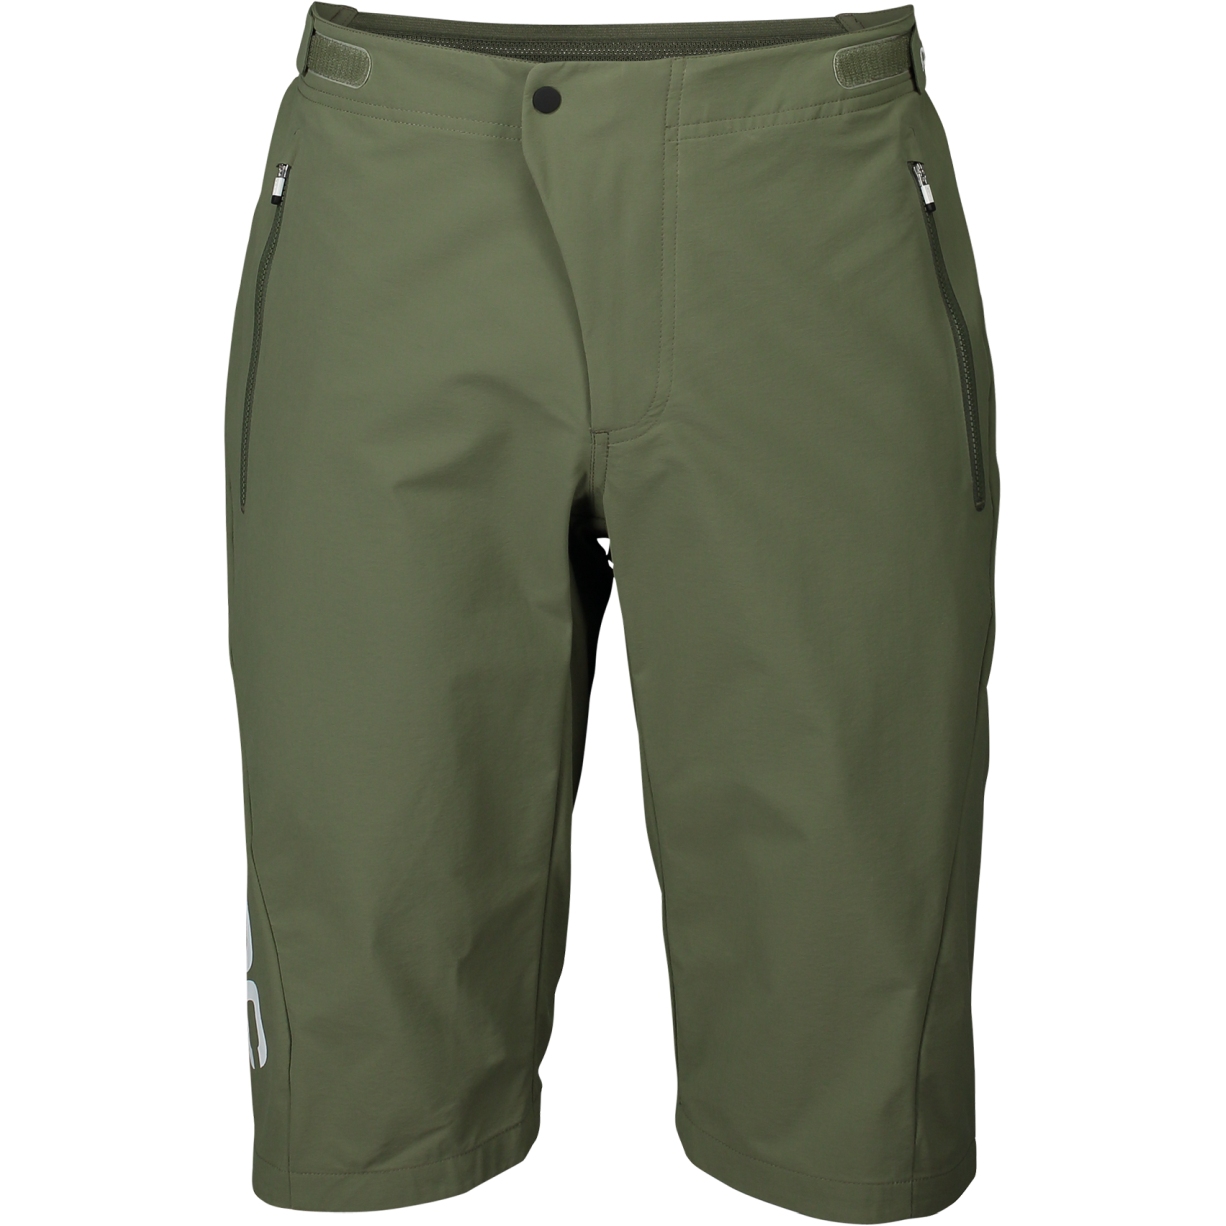 Produktbild von POC Essential Enduro Shorts - 1460 epidote green